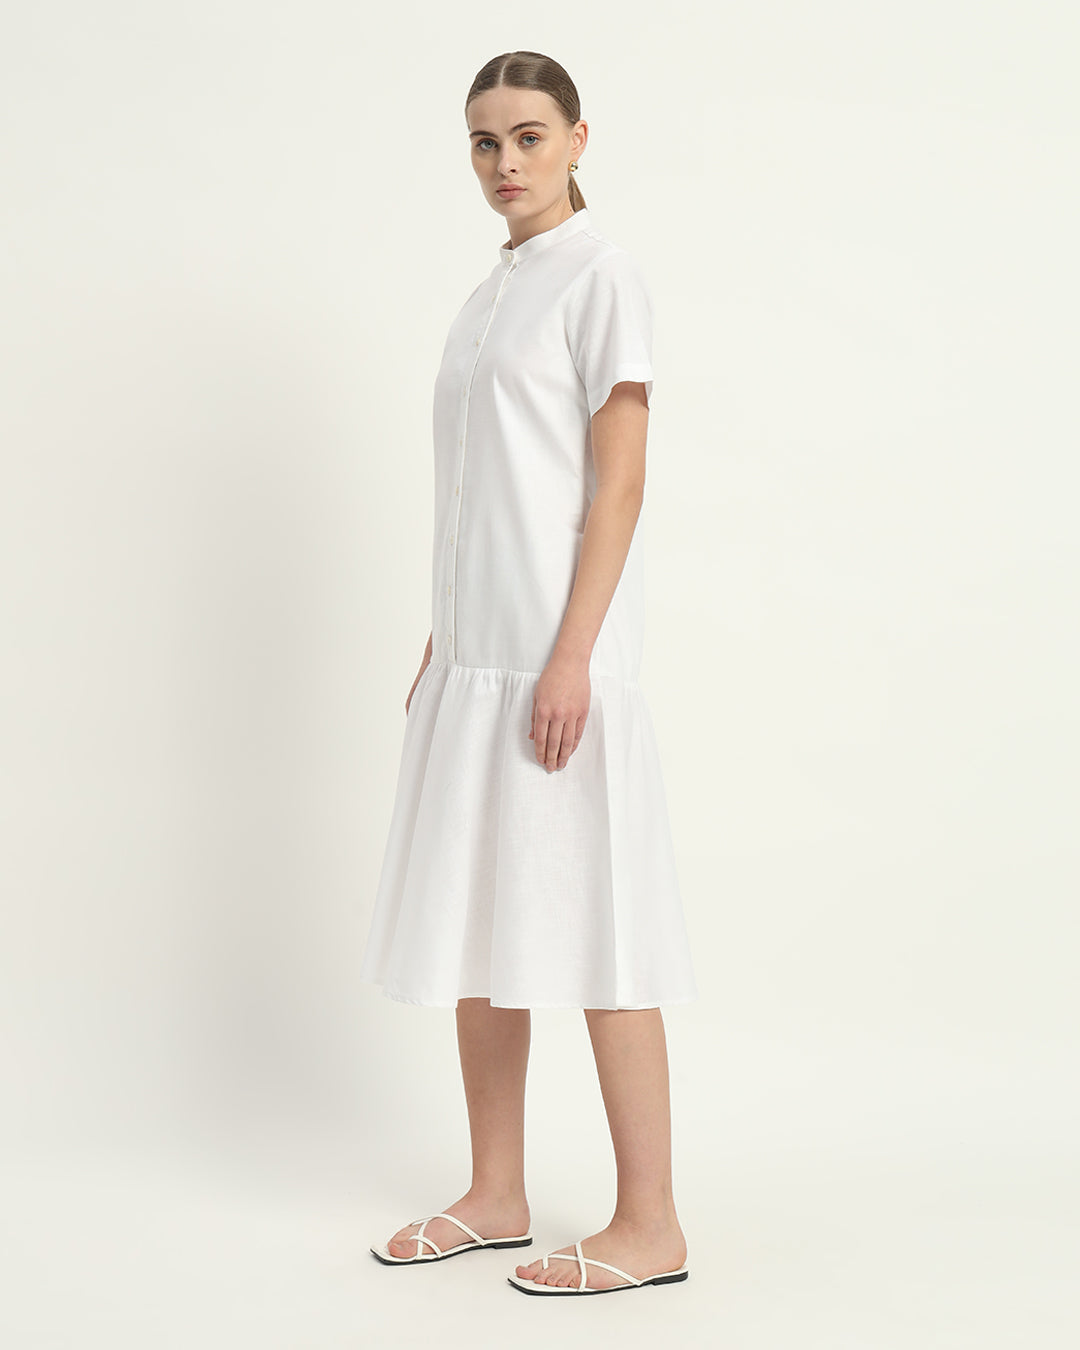 The Melrose Daisy White Linen Dress